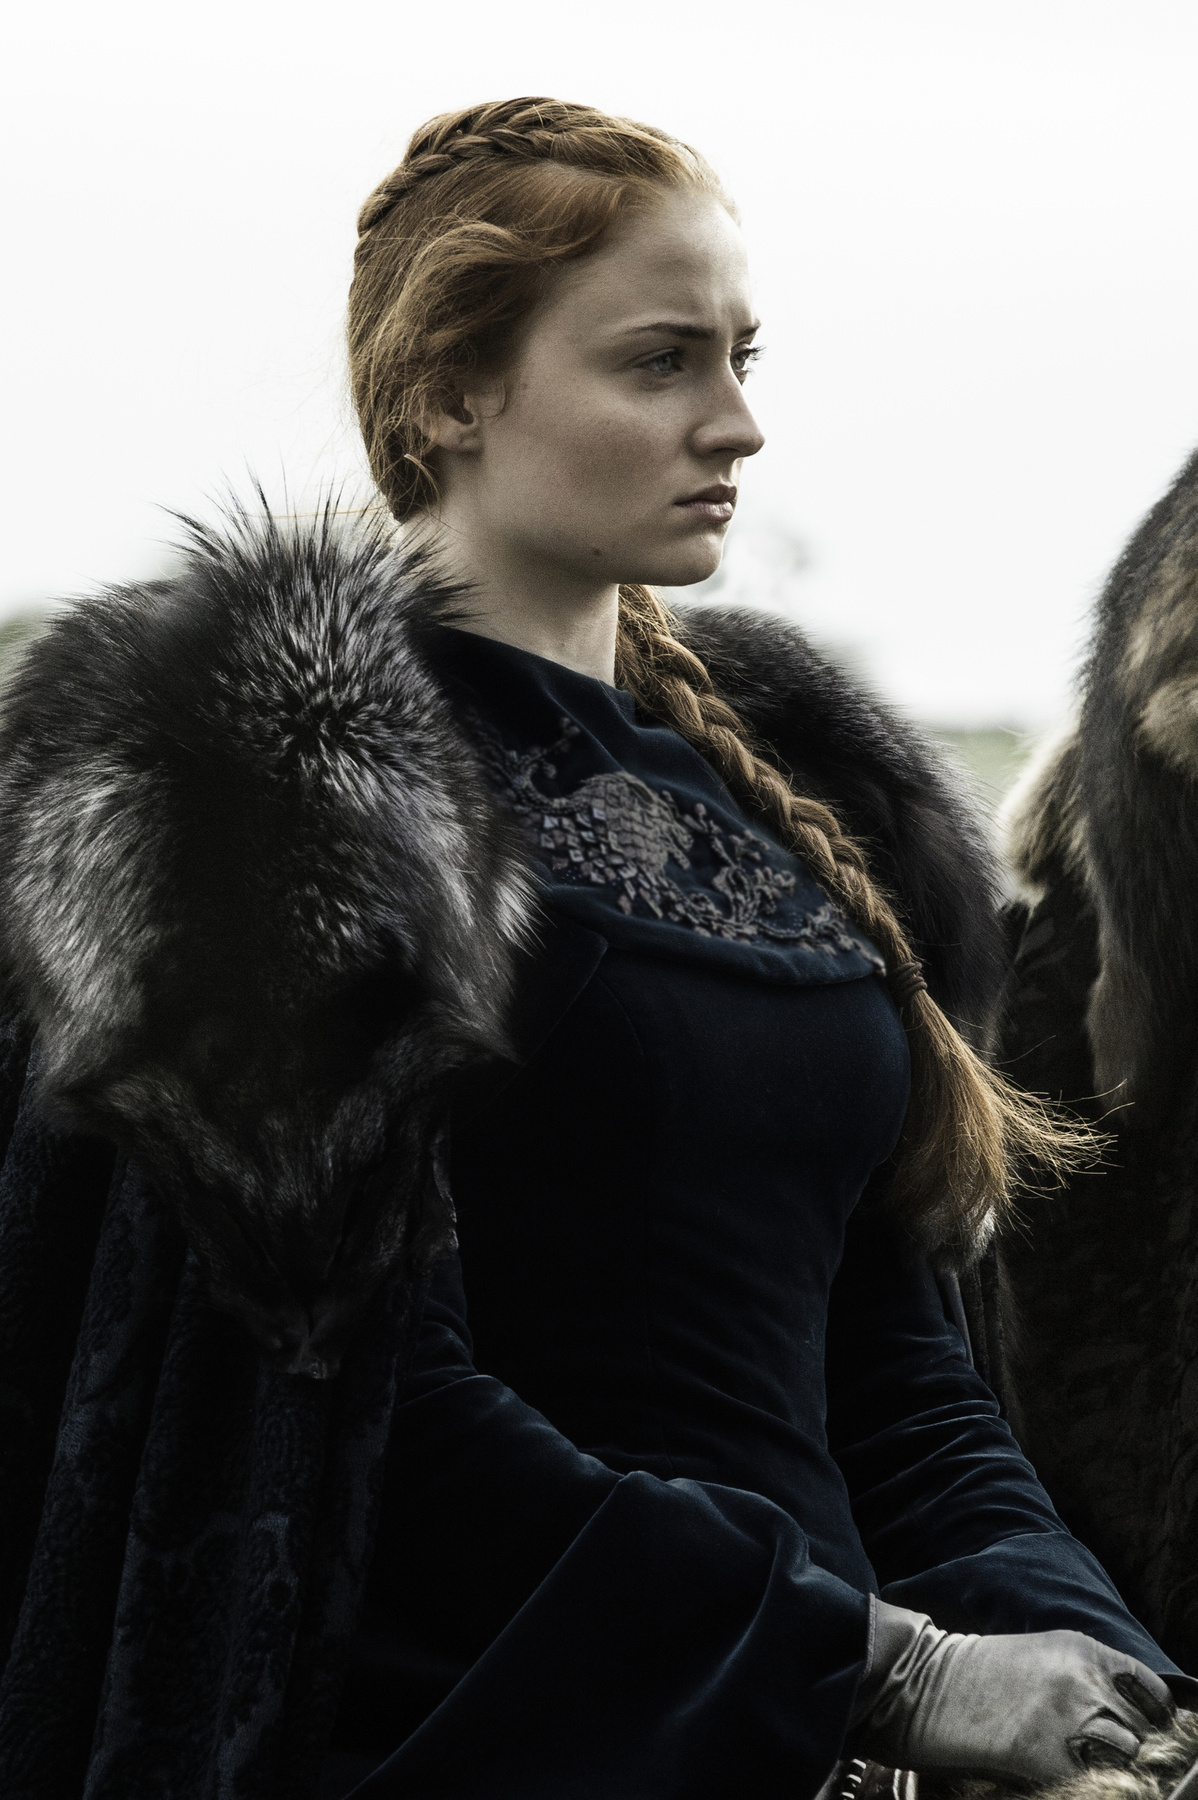 Sophie Turner Sansa Stark szerepét játssza a Trónok harca című sorozatban.